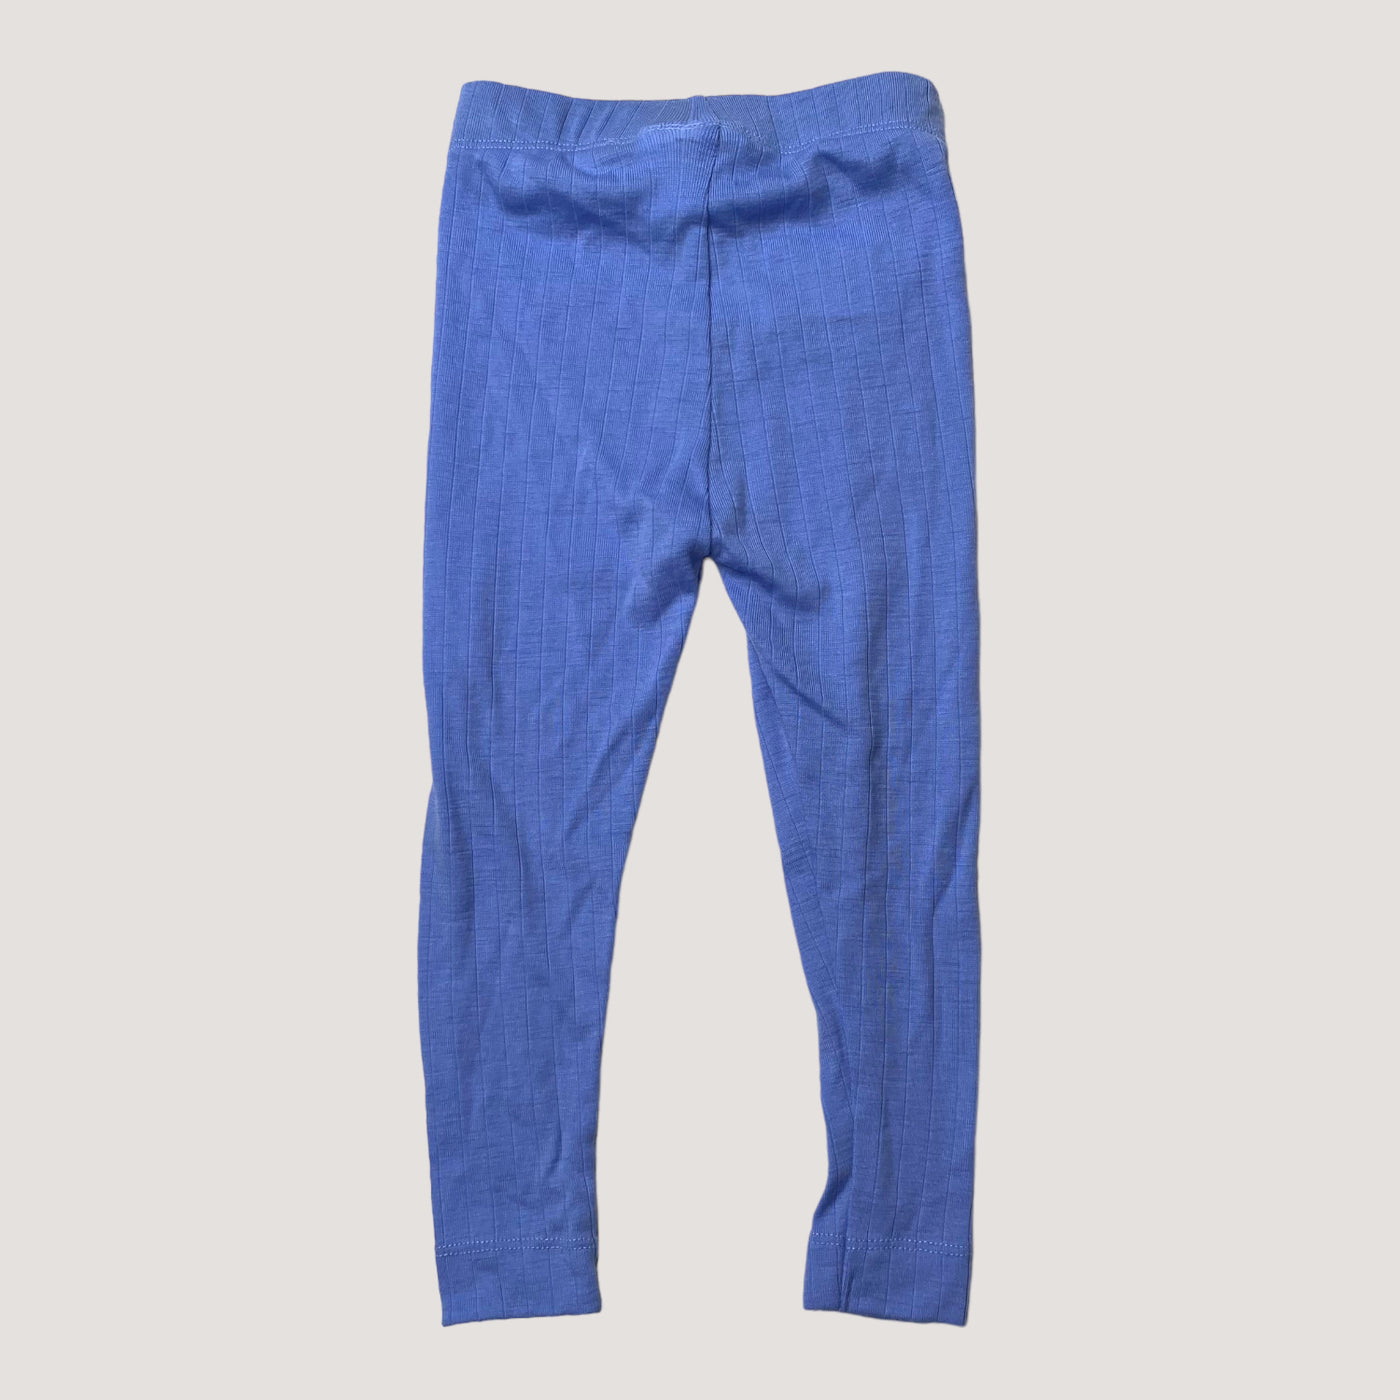 Mainio merino wool leggings, royal blue | 86/92cm